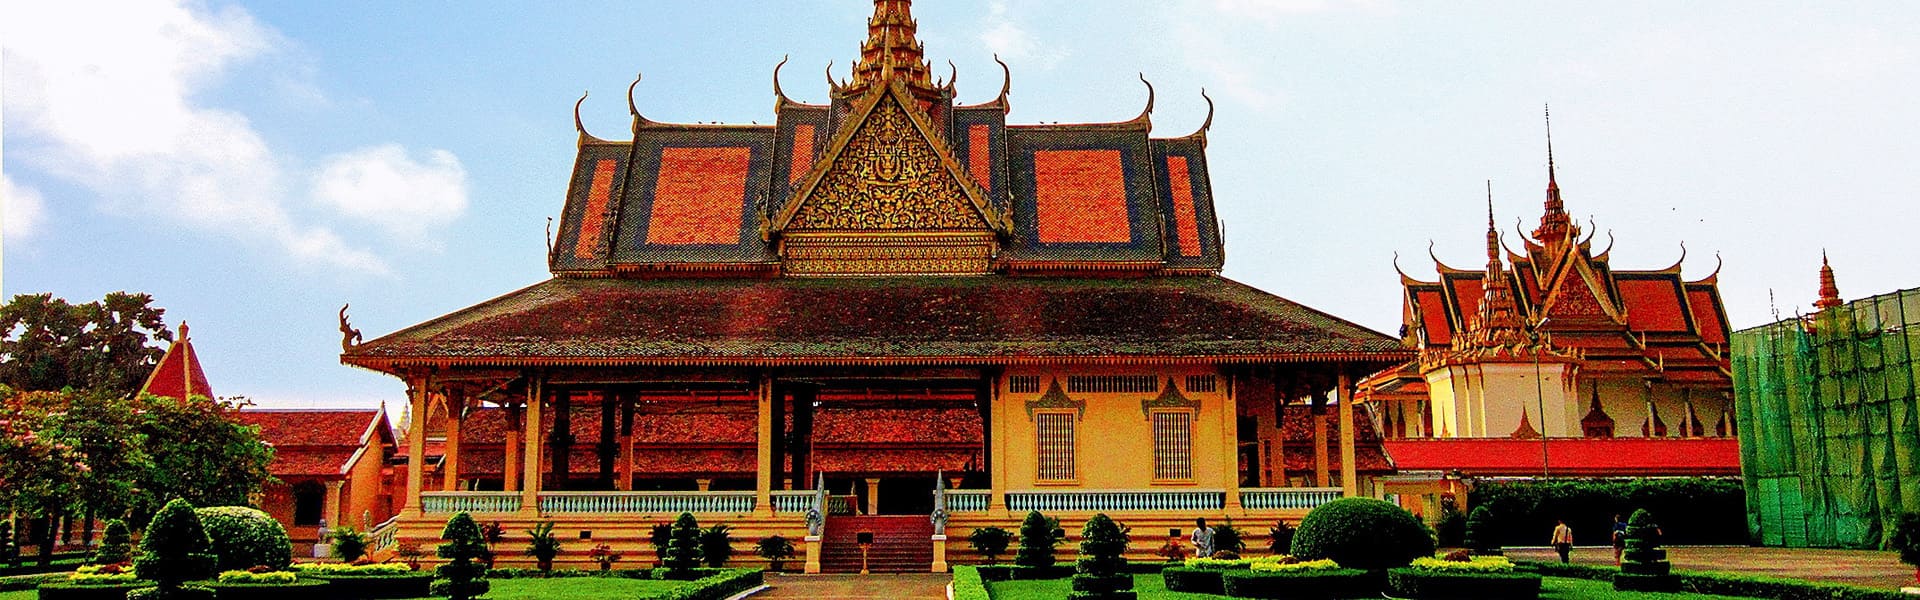 Kinh nghiệm du lịch Campuchia tự túc - Xứ sở chùa tháp huyền bí